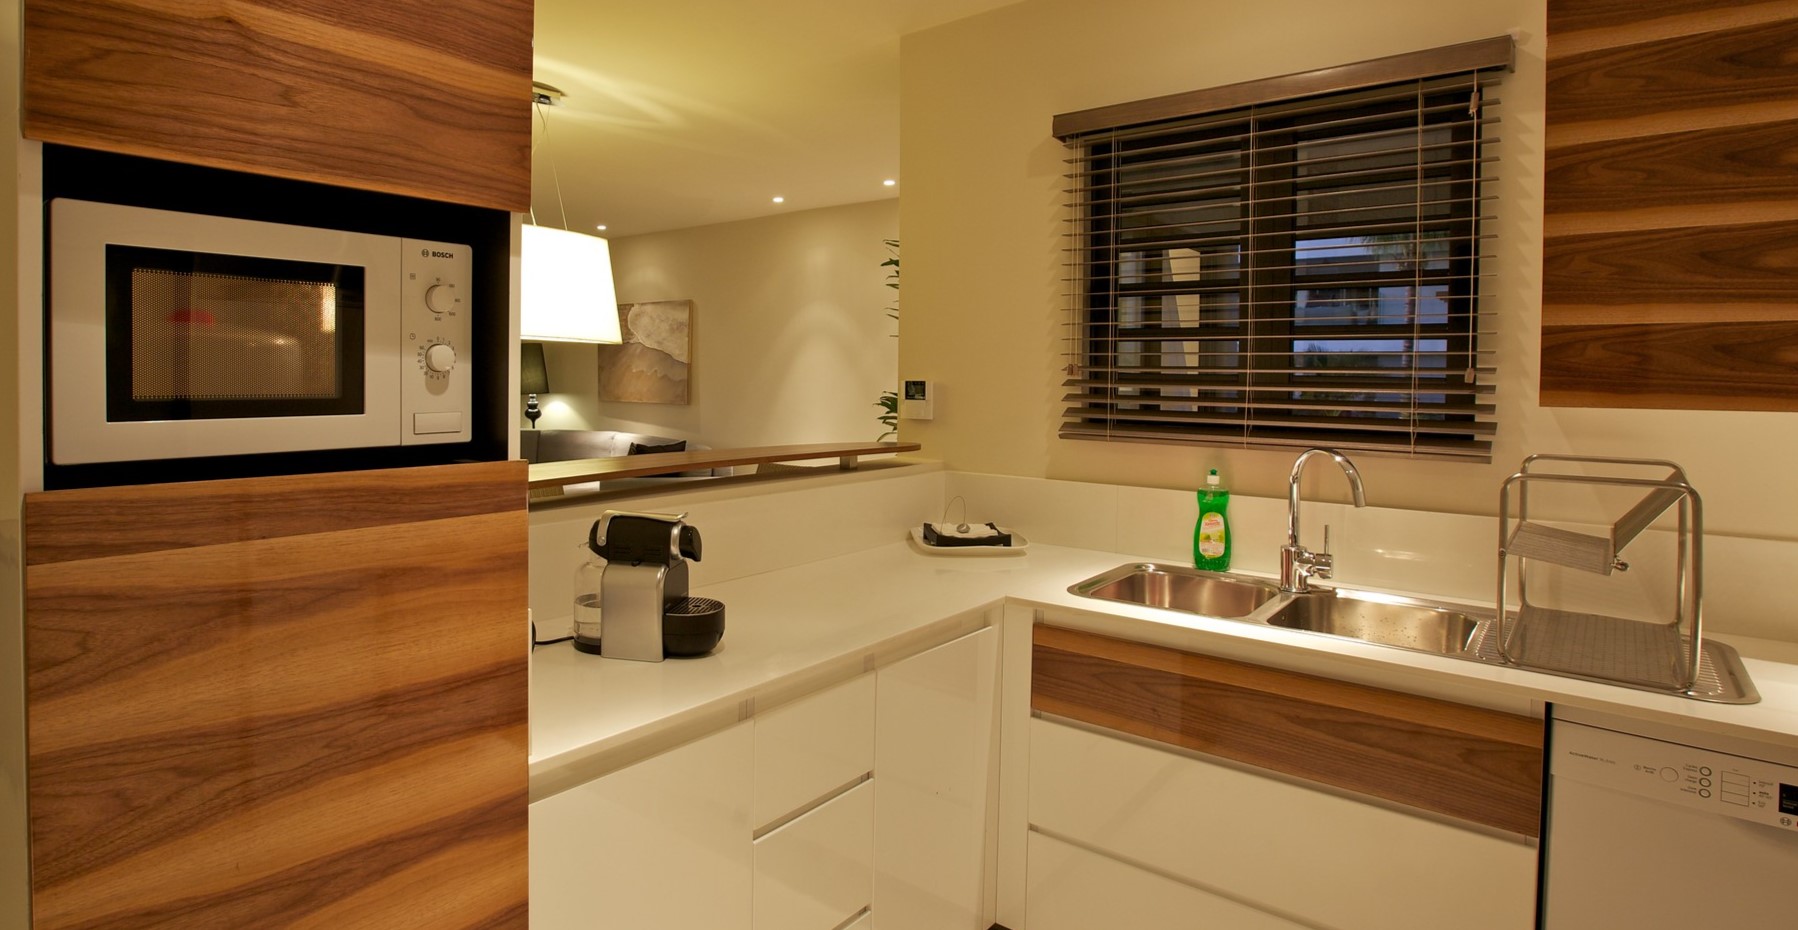 Кухонные фасады с рисунком дерева идеально гармонируют с однотонными выдвижными ящиками и белой столешницей